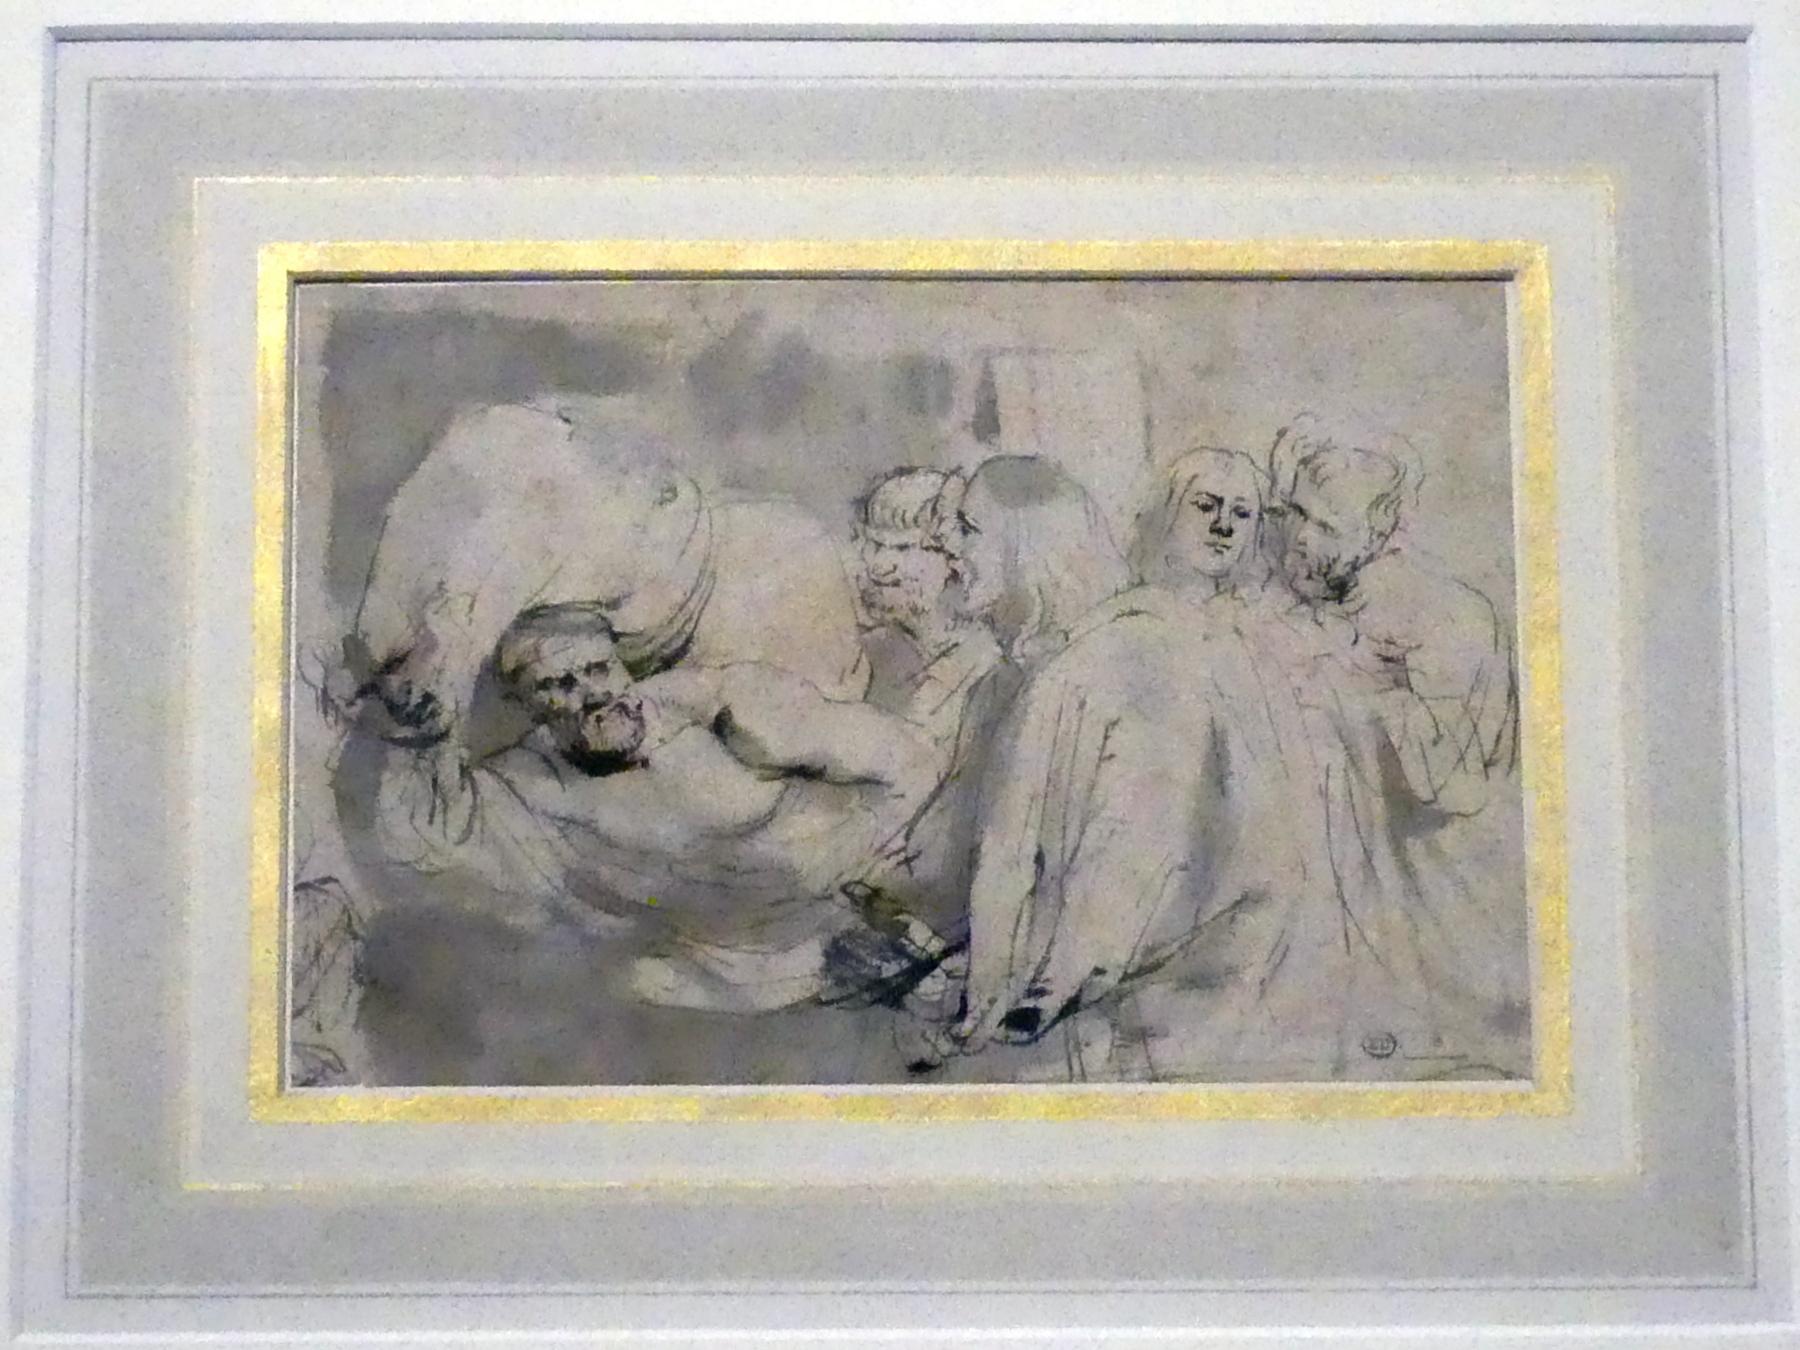 Anthonis (Anton) van Dyck (1614–1641), Die Heilung des Lahmen, München, Alte Pinakothek, Ausstellung "Van Dyck" vom 25.10.2019-02.02.2020, Die Anfänge - 3, um 1618–1620